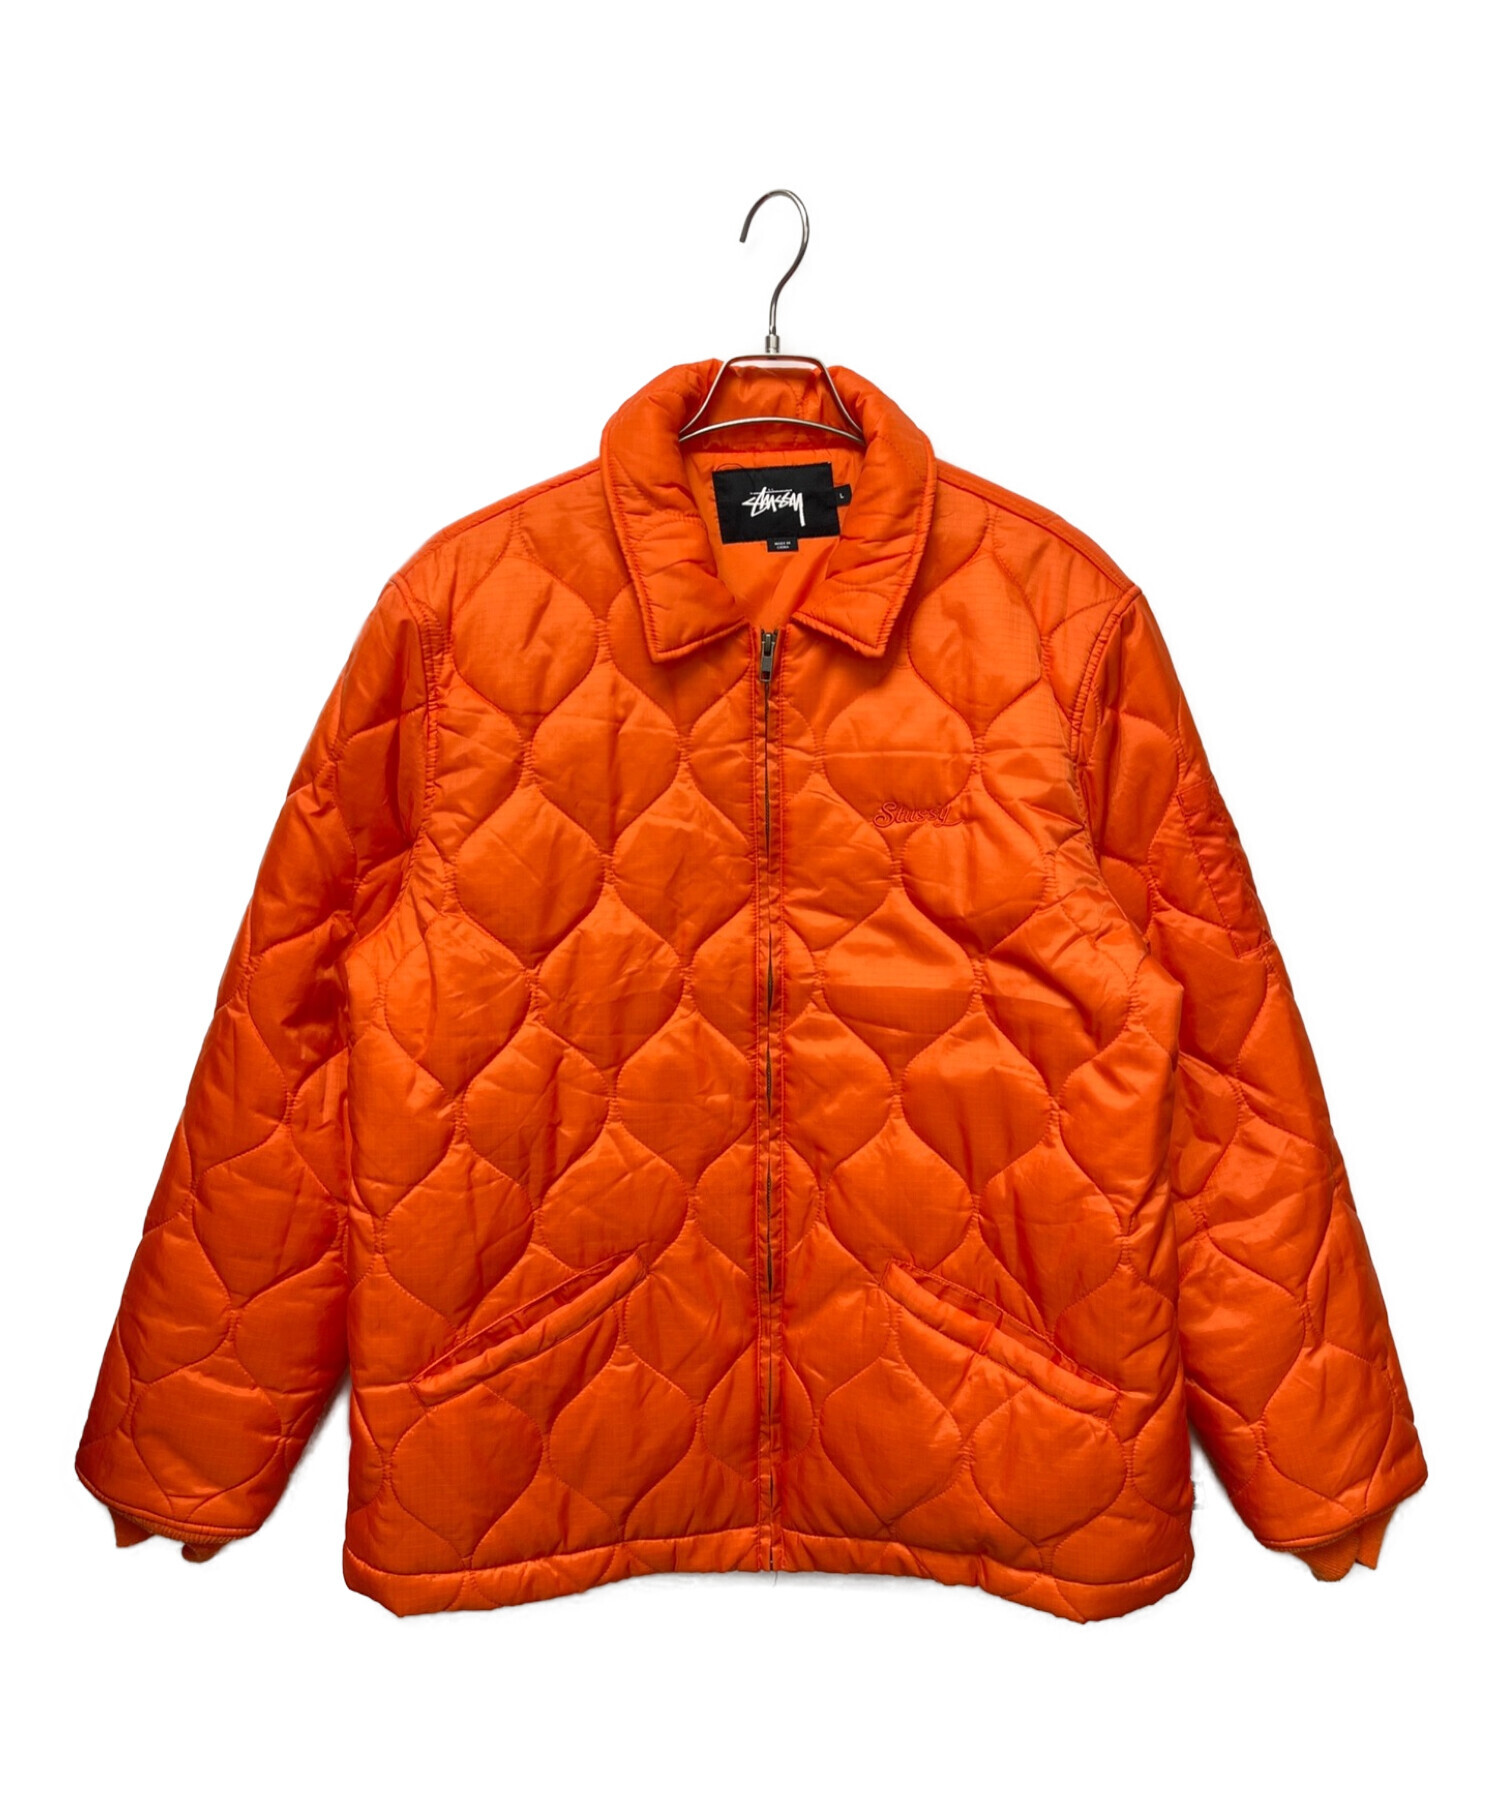 stussy (ステューシー) ワンポイント刺繍キルティングジャケット オレンジ サイズ:L